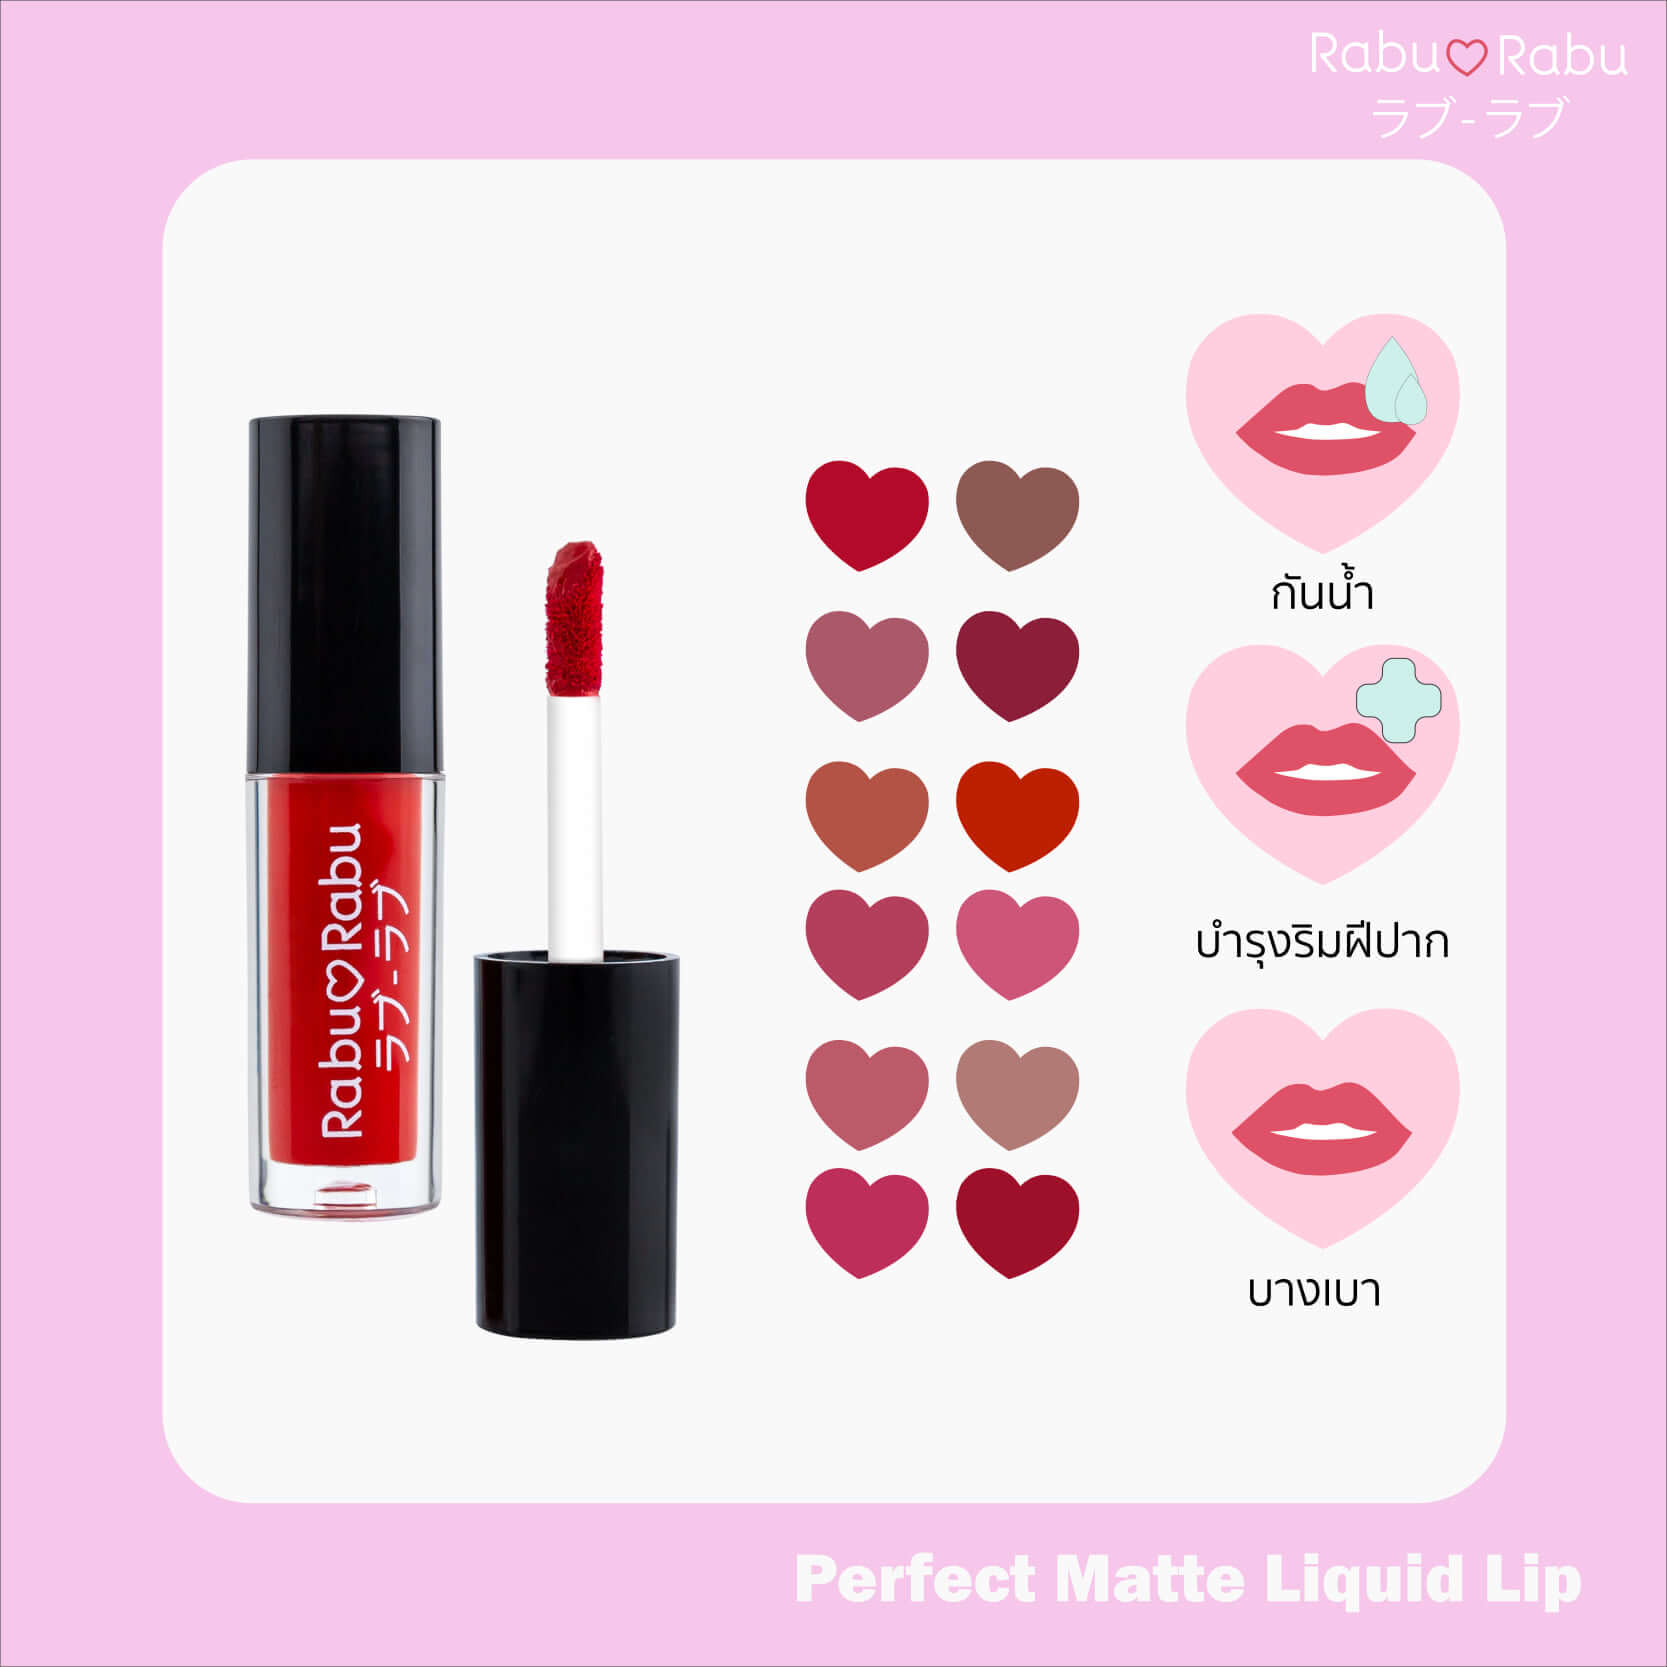 Rabu Rabu,Perfect Matte Liquid Mini Lip,Rabu Rabu Perfect Matte Liquid Mini Lip,lip,Lipstick,ลิปสติก,ลิปมินิ,Lip mini